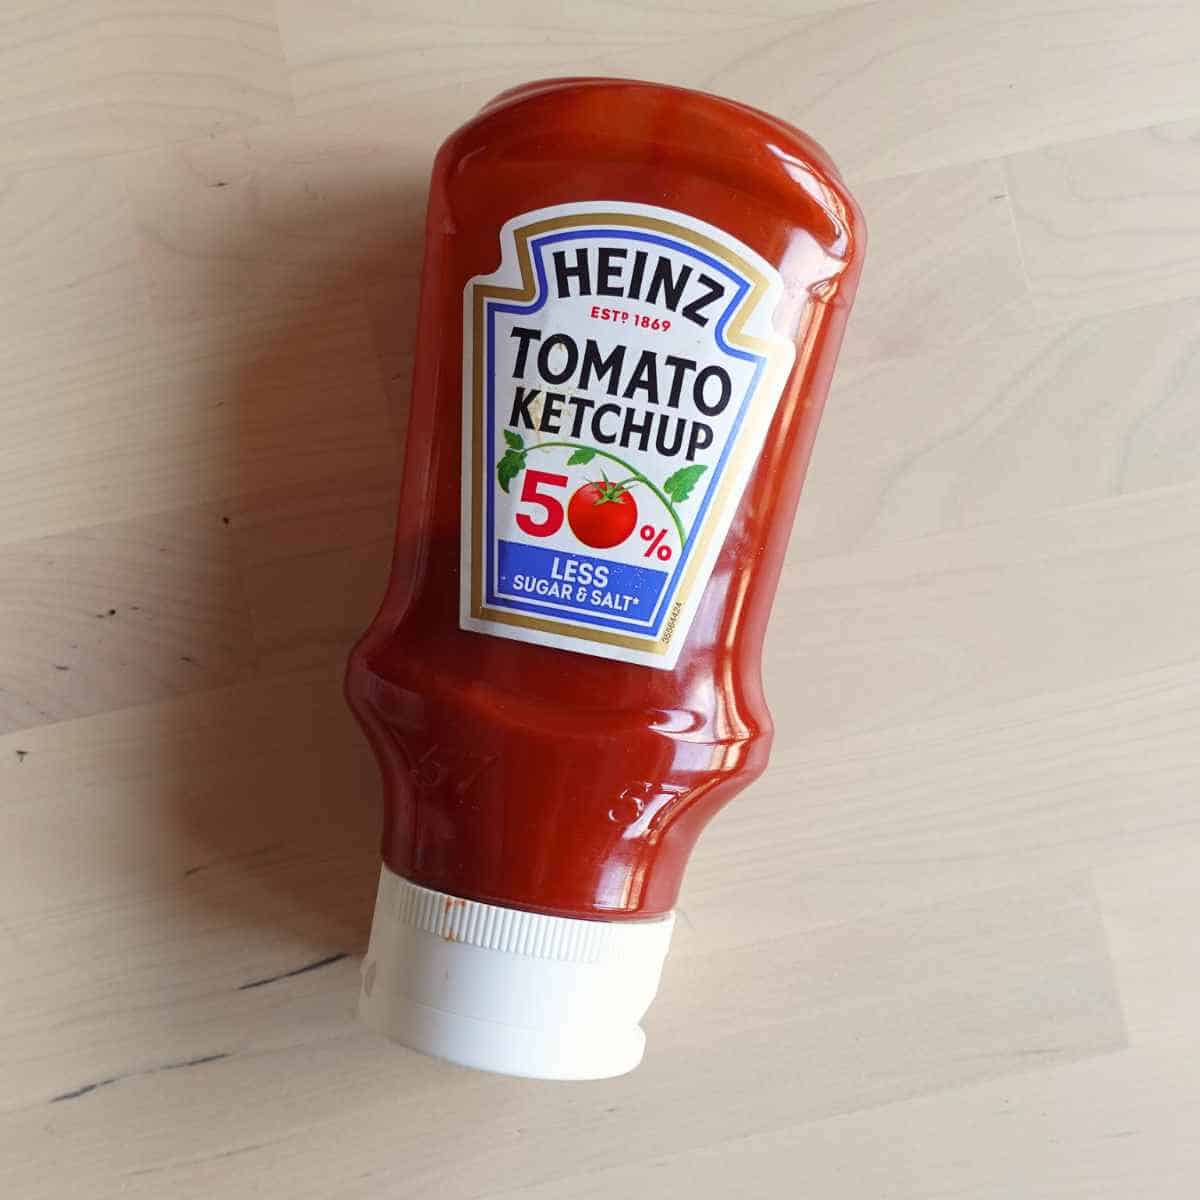 tomato ketchup sauce